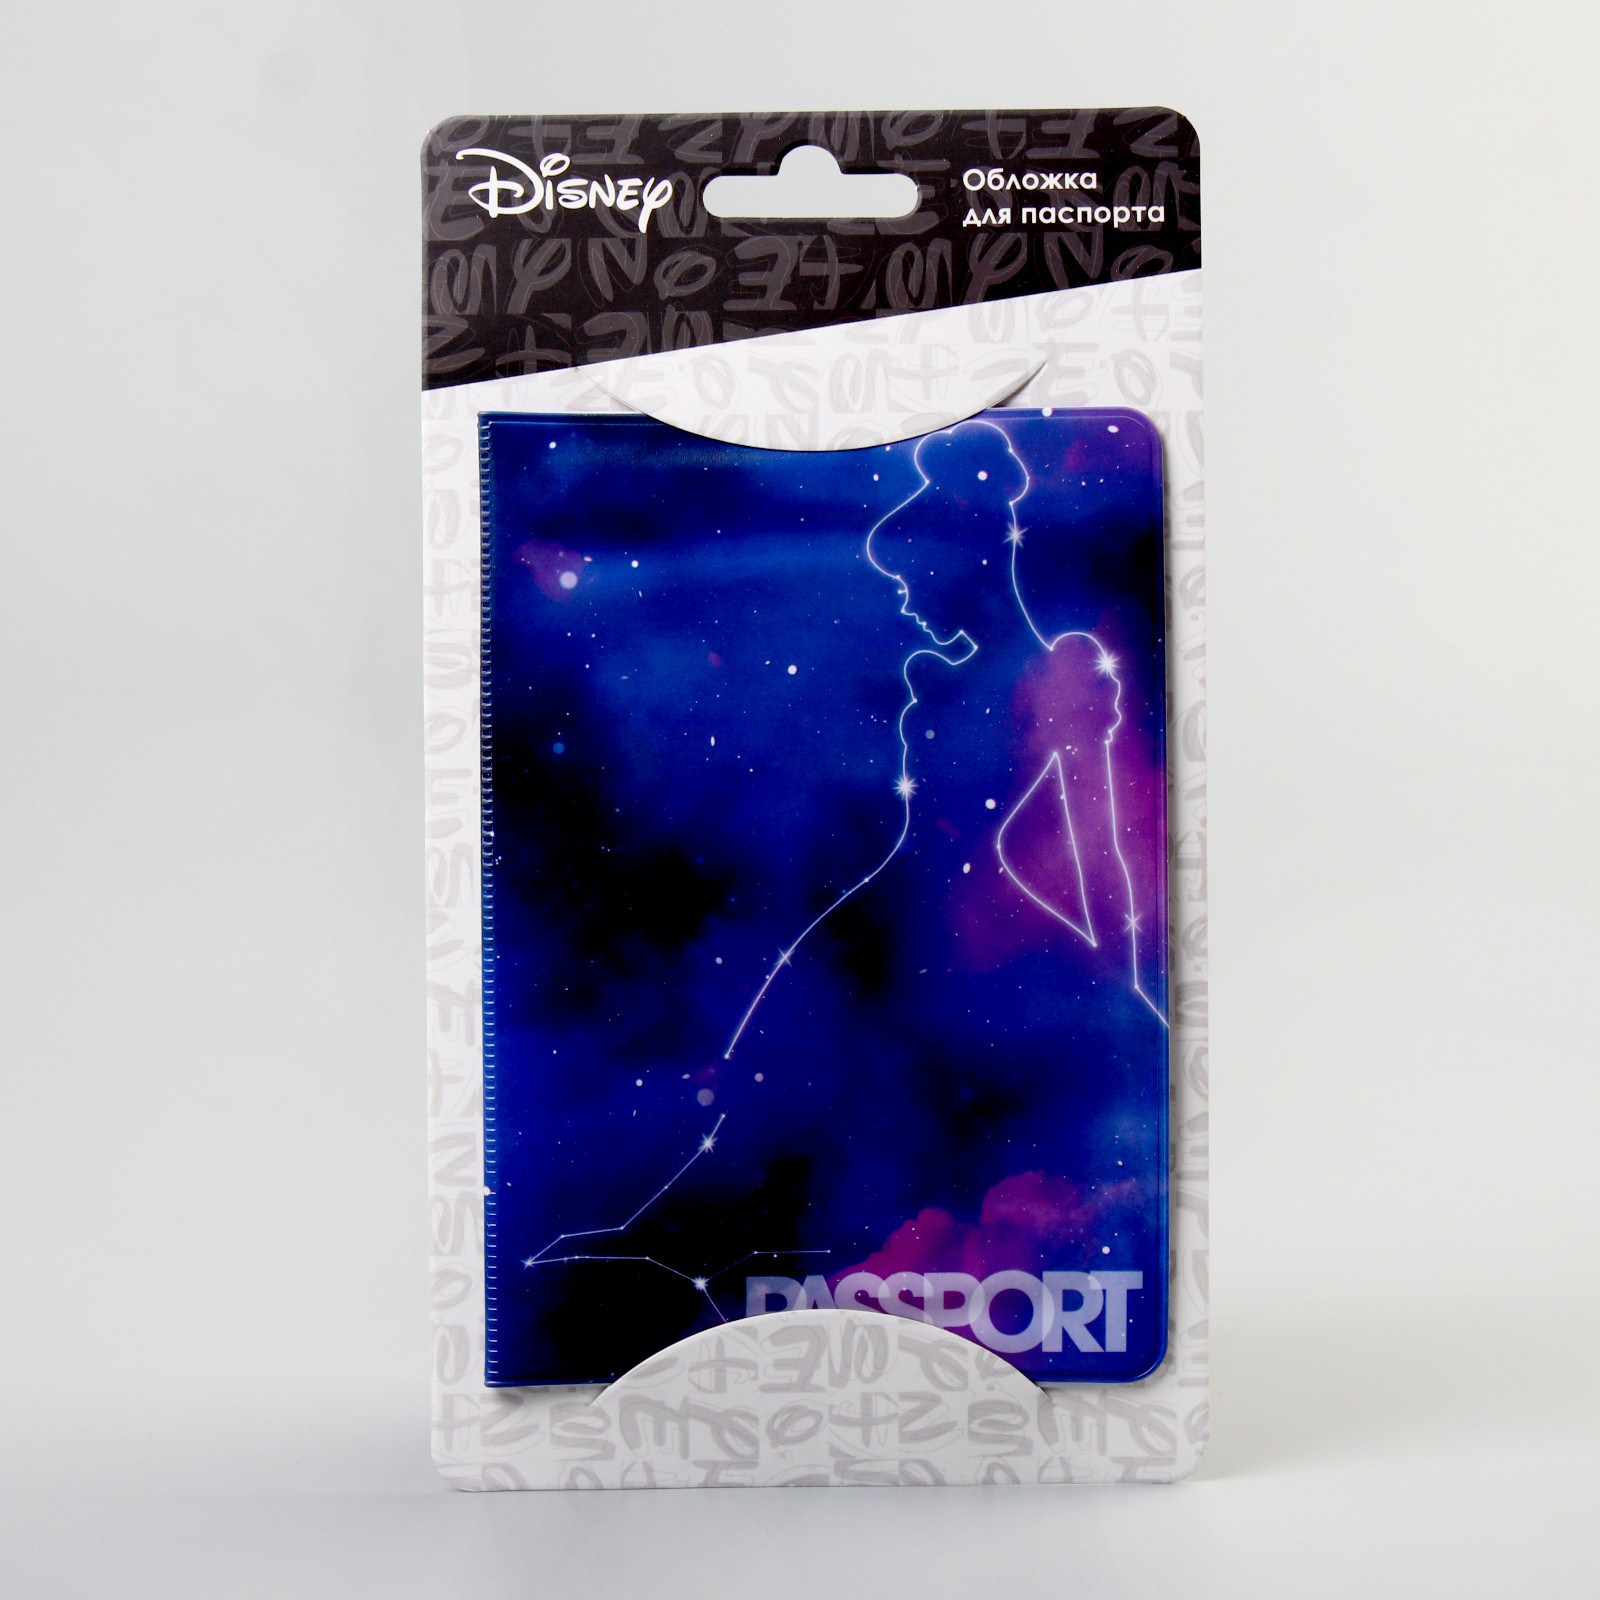 Обложка Disney для паспорта Принцессы Disney - фото 2